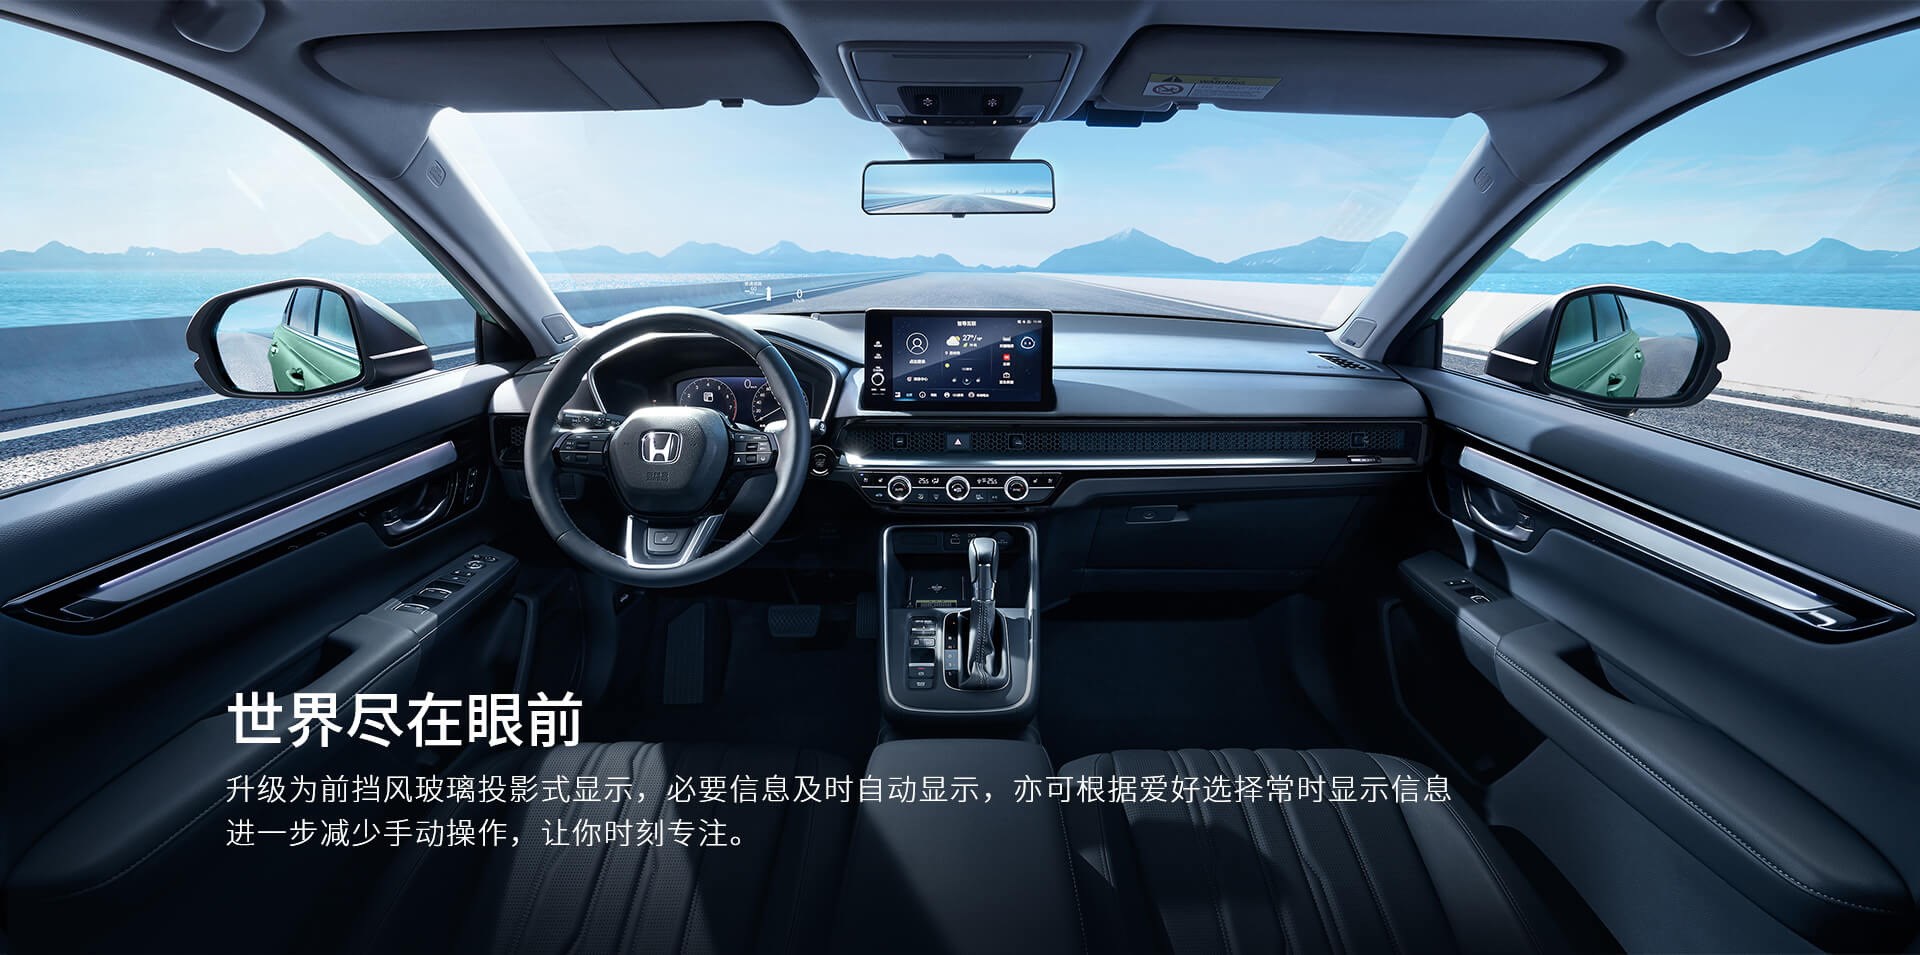 Yeni Honda Breeze Çin'de tanıtıldı: İşte tasarımı ve özellikleri